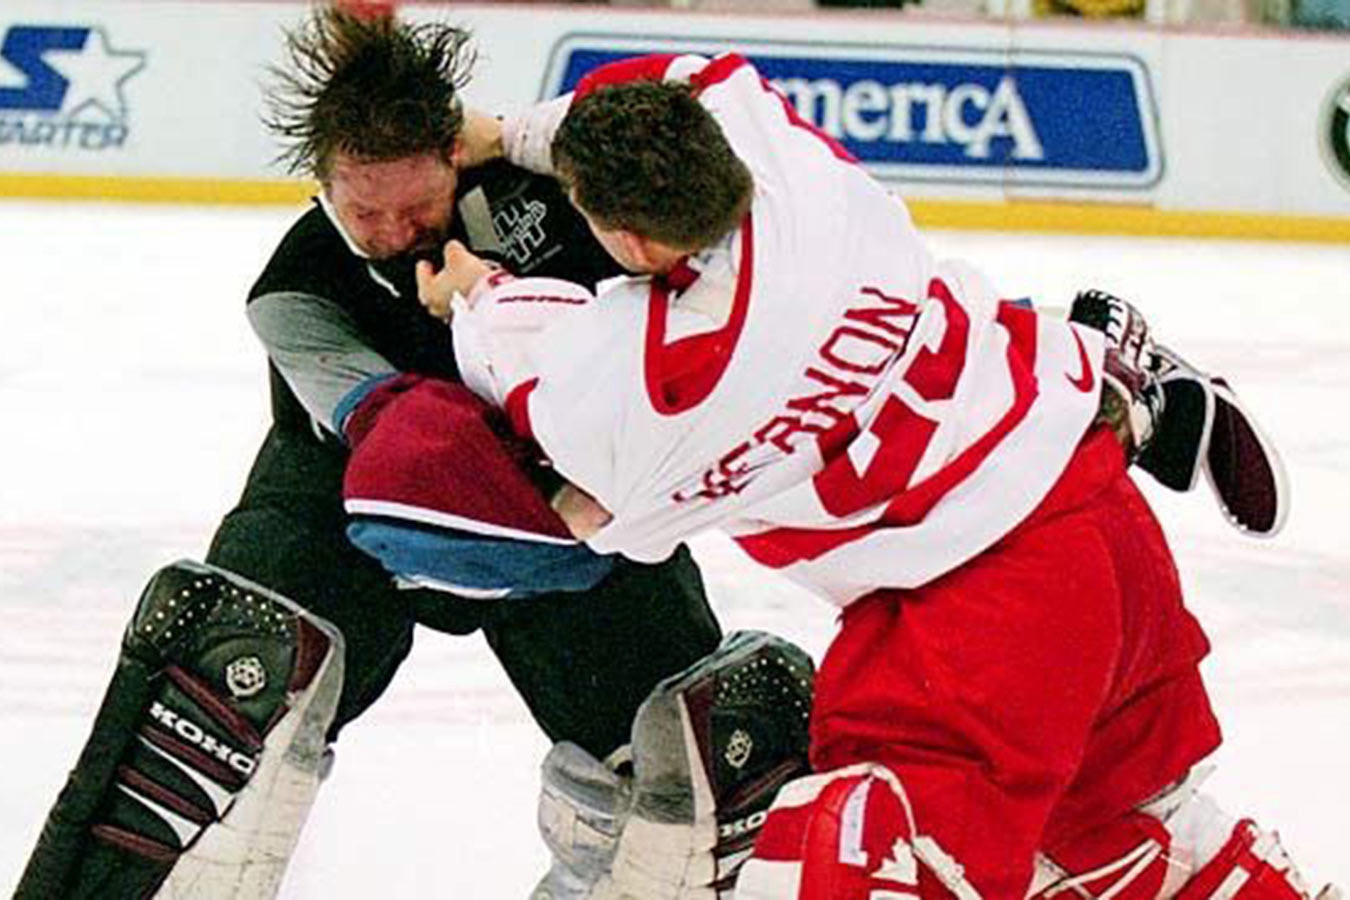 Легендарная драка НХЛ из 90-х. Ларионов сцепился с Форсбергом, а рядом бились вратари